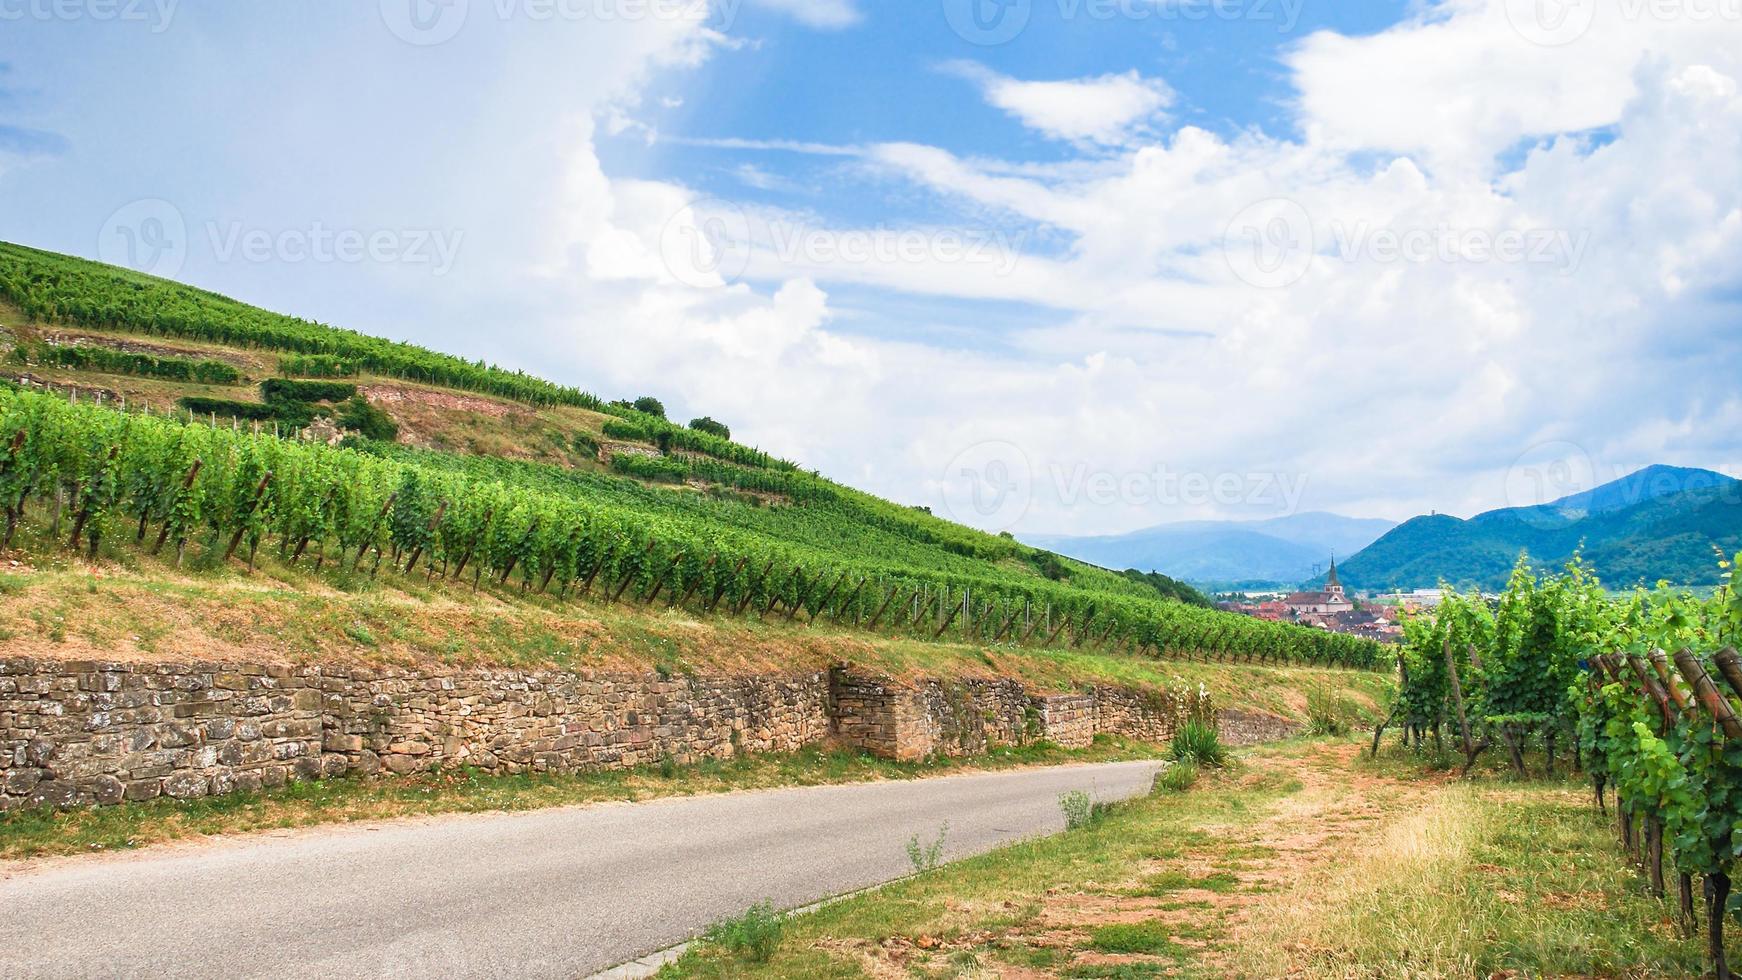 väg mellan vingårdar i Alsace vin rutt område foto